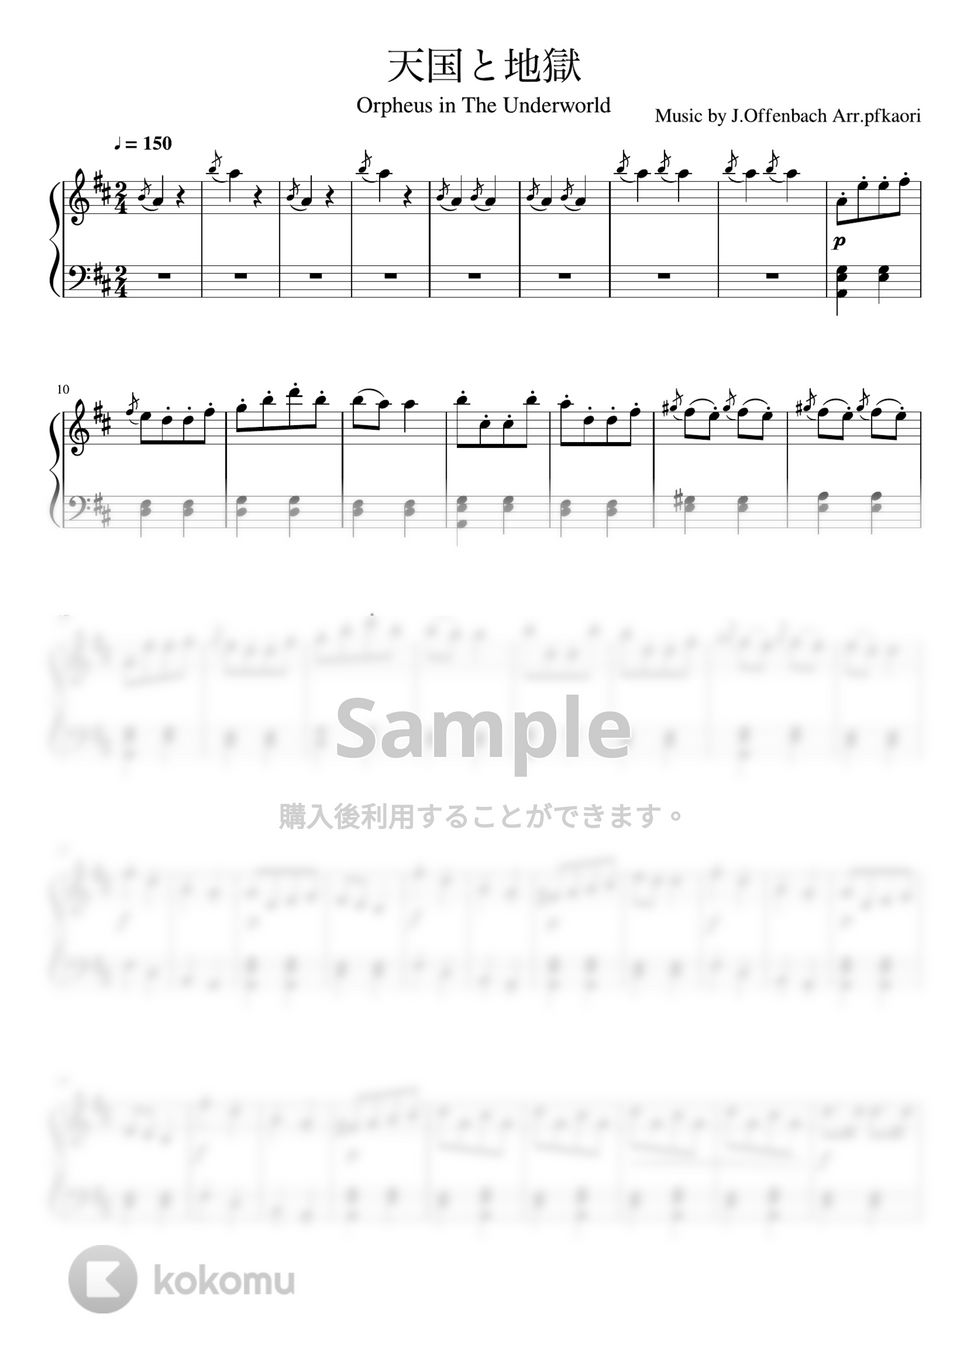 オッフェンバック - 天国と地獄・序曲(Ddur) (ピアノソロ初〜中級) by pfkaori